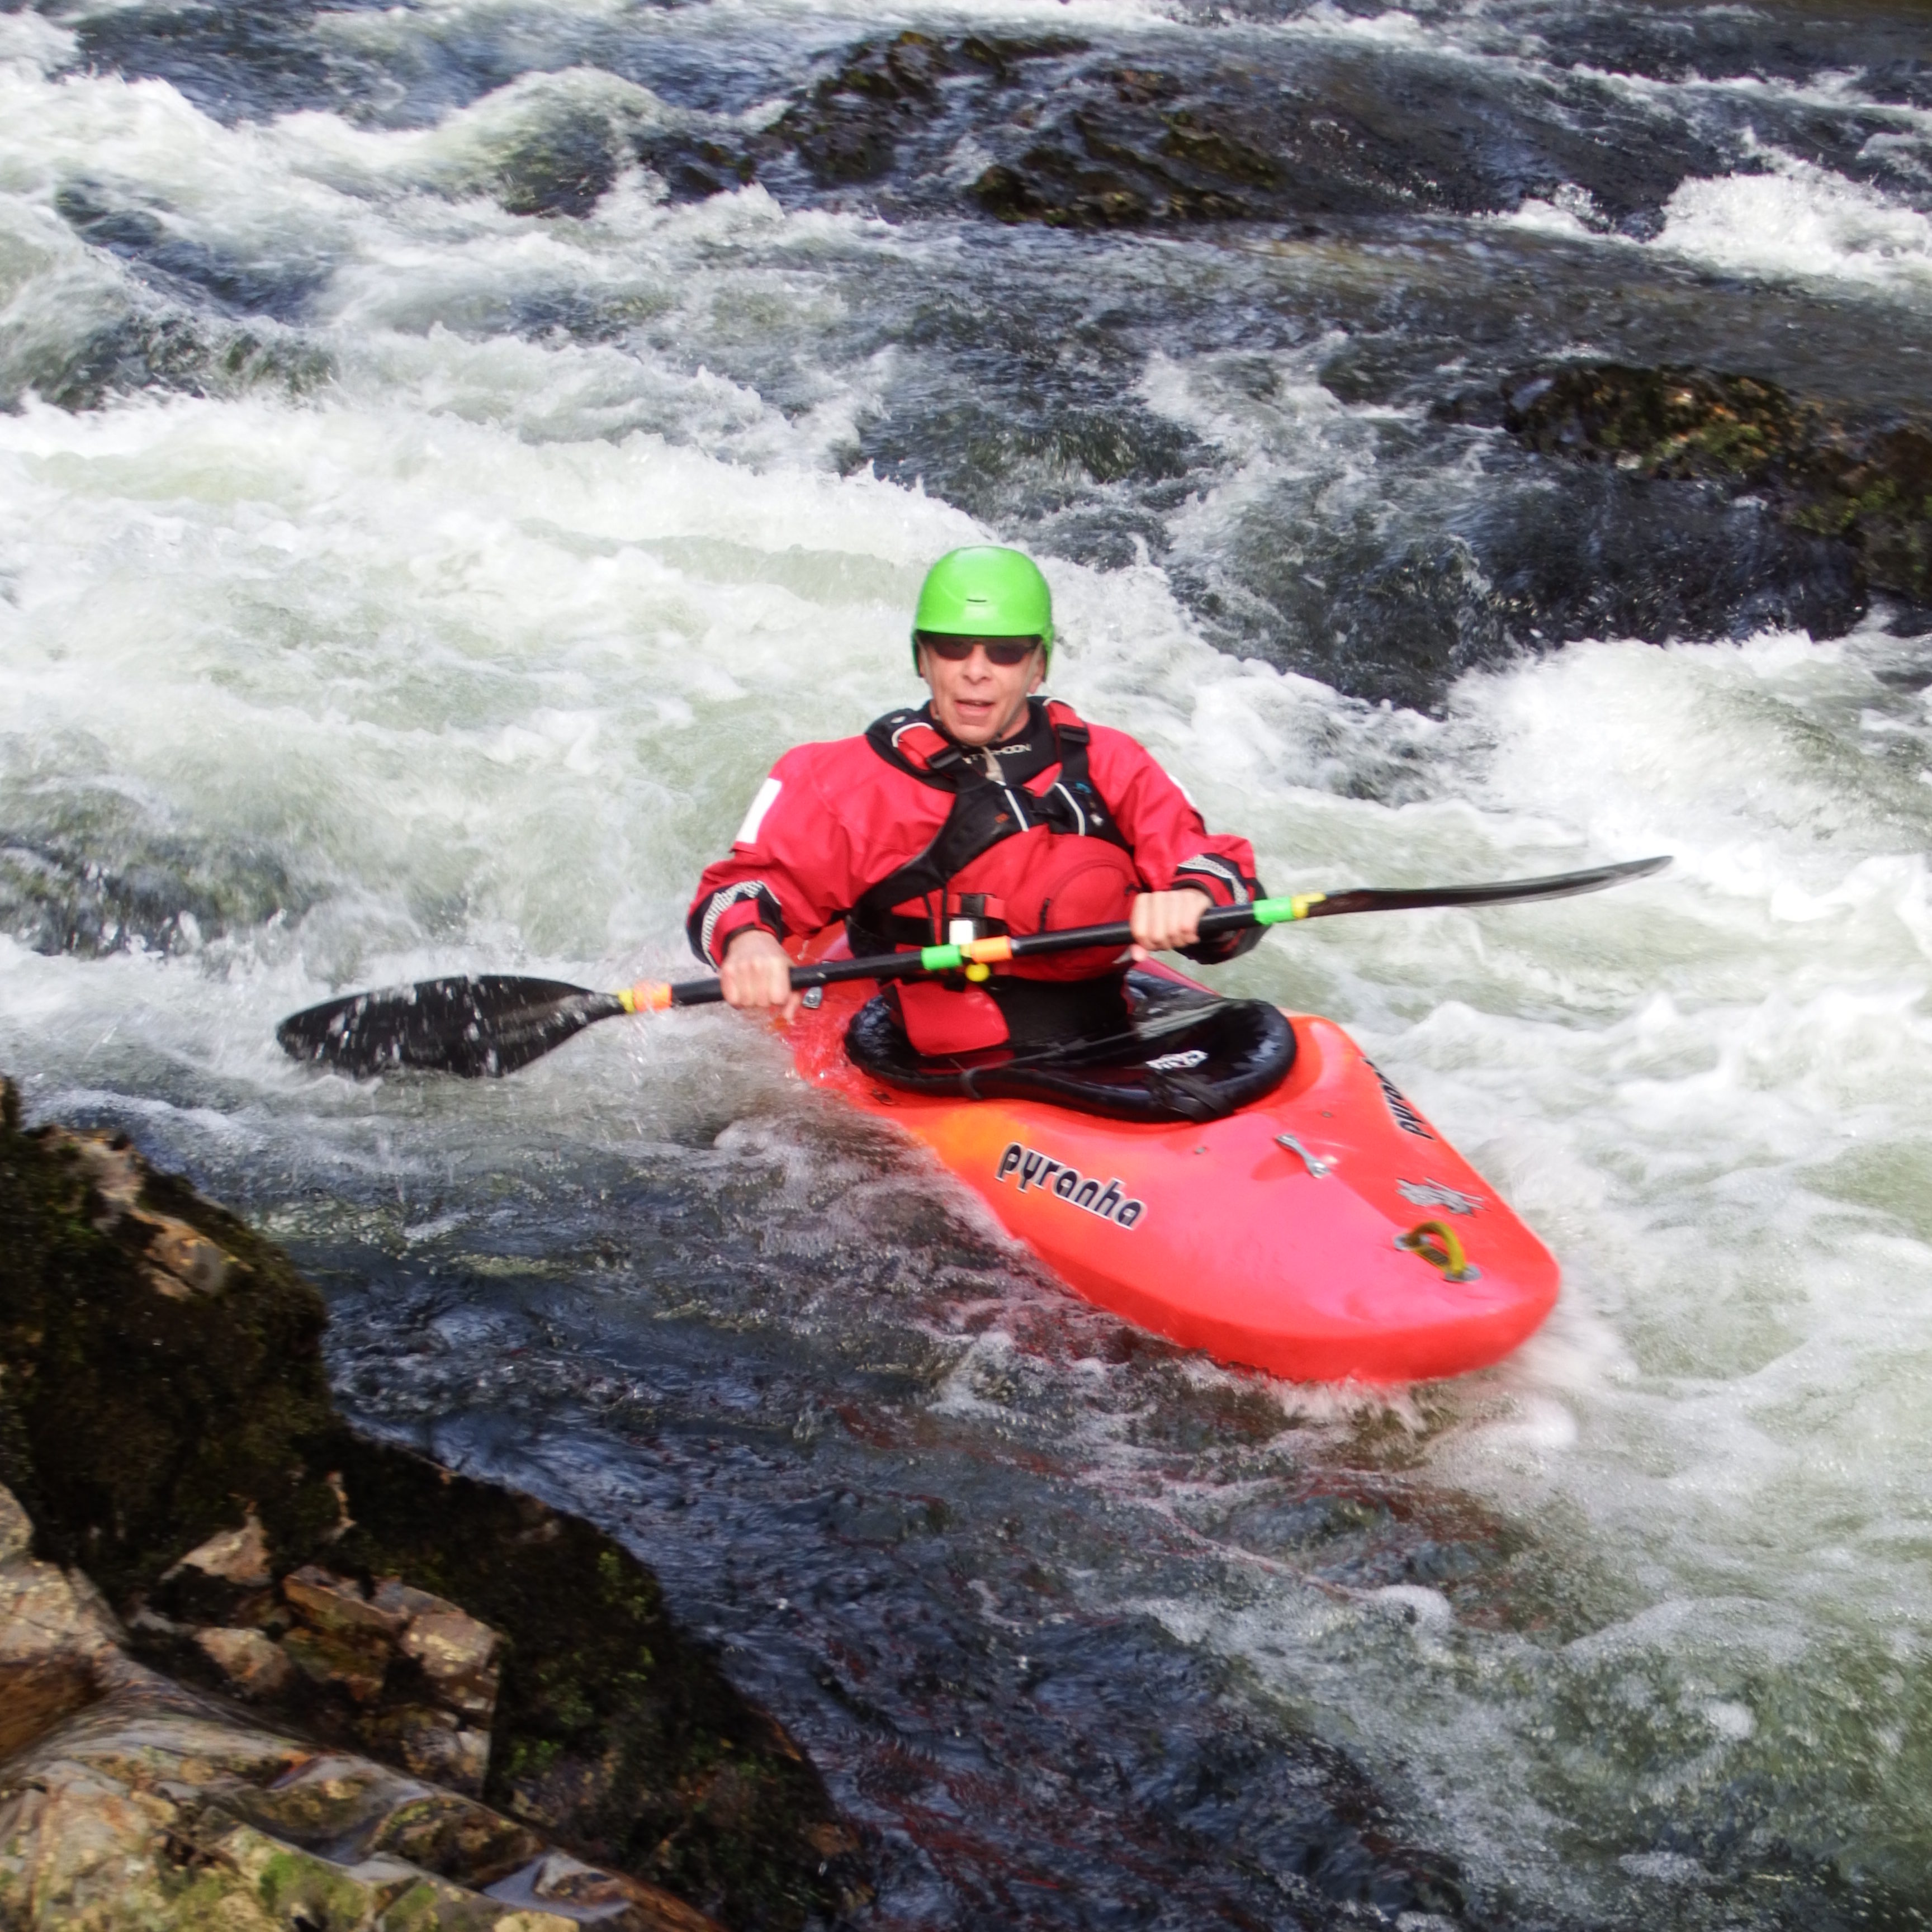 Pat kayaking down the river Dart